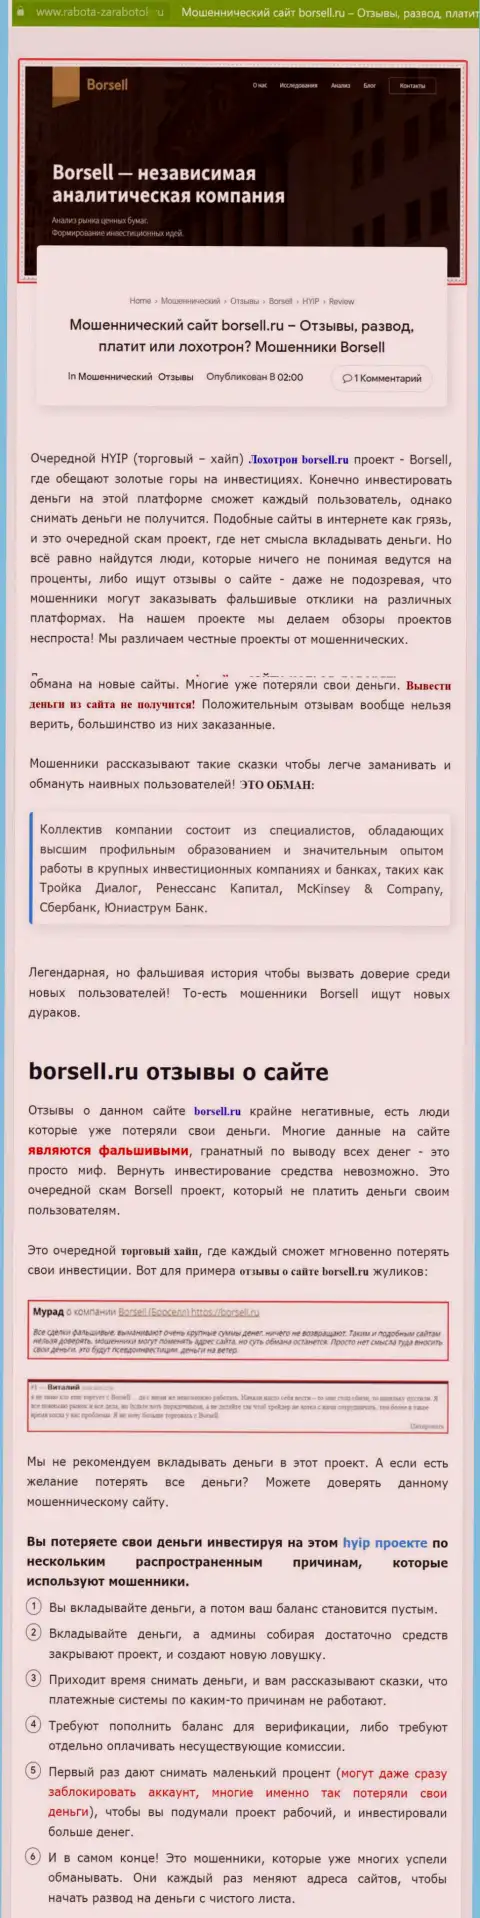 Детально проанализируете условия работы Borsell Ru, в компании лохотронят (обзор)